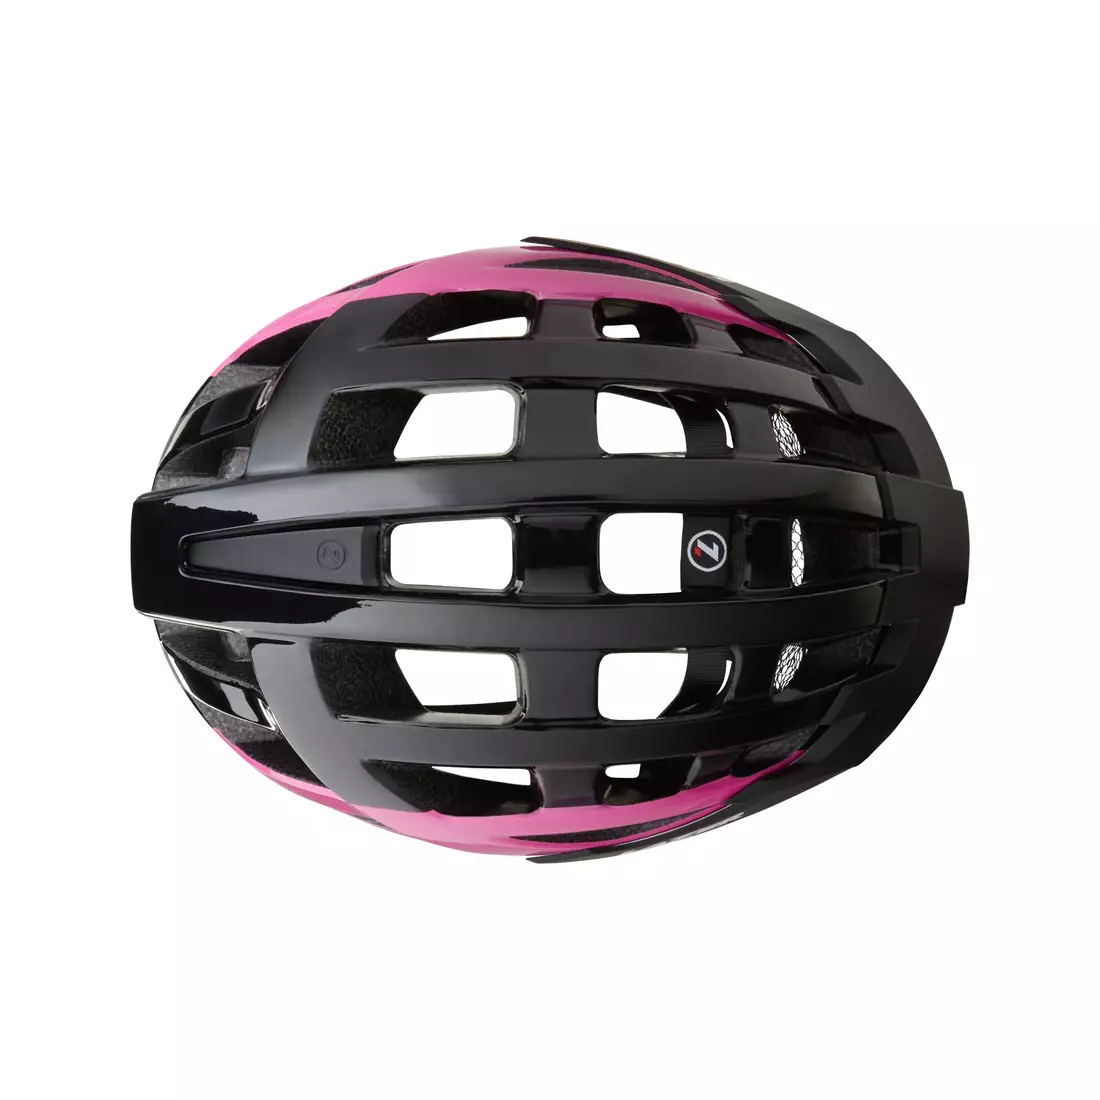 Dámska cyklistická prilba LAZER Petit DLX Mesh + LED čierna a ružová